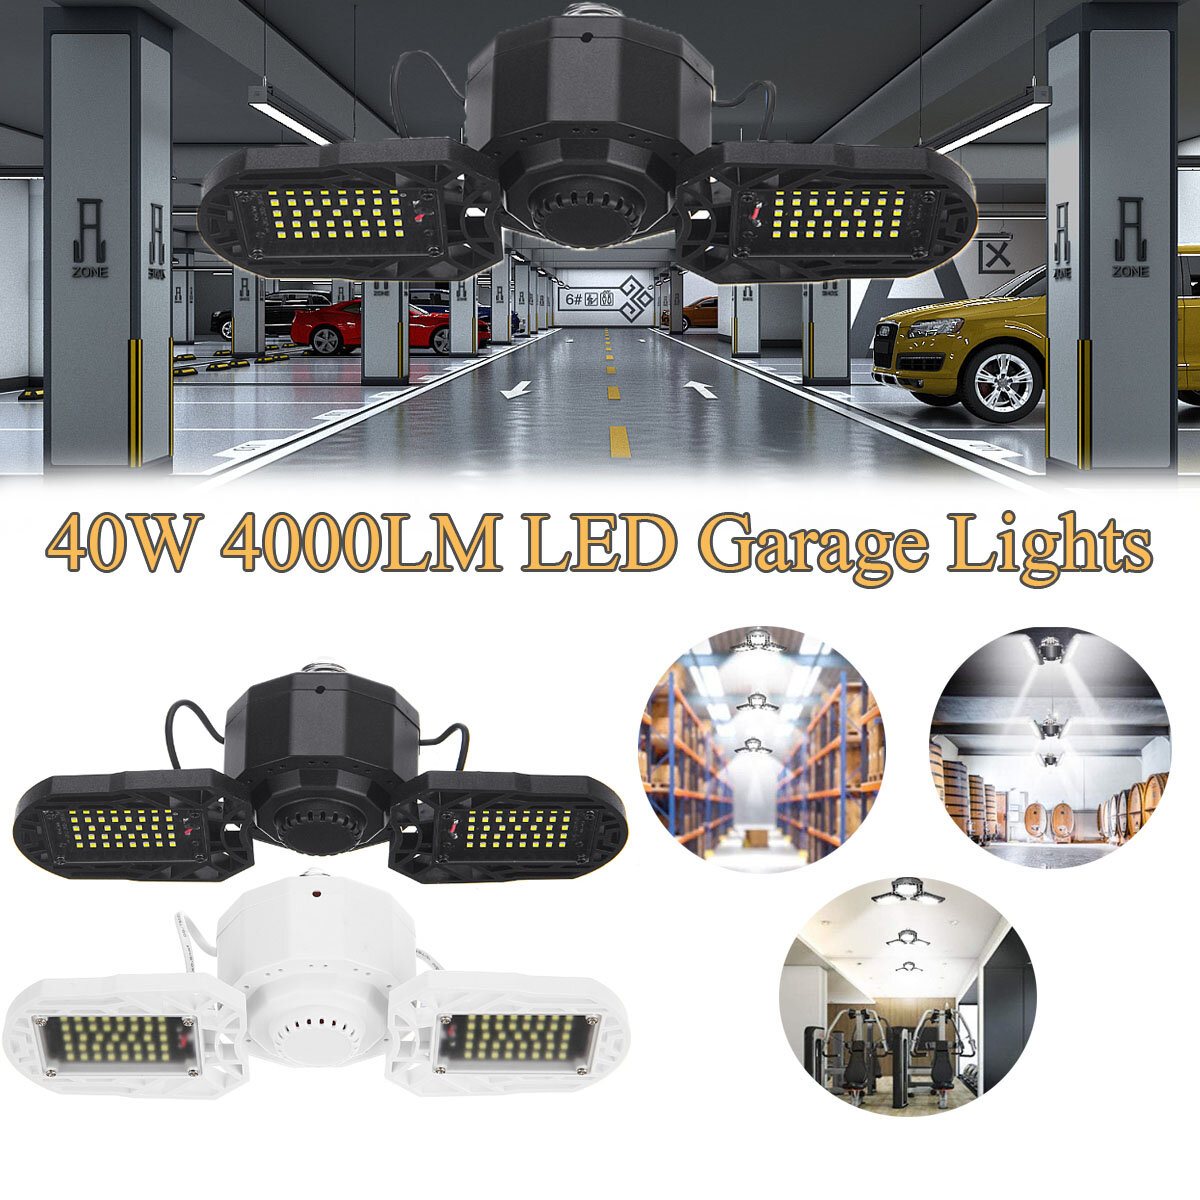 E27 40W 4000LM LED Garage Lights Deformable Garage Ceiling Light